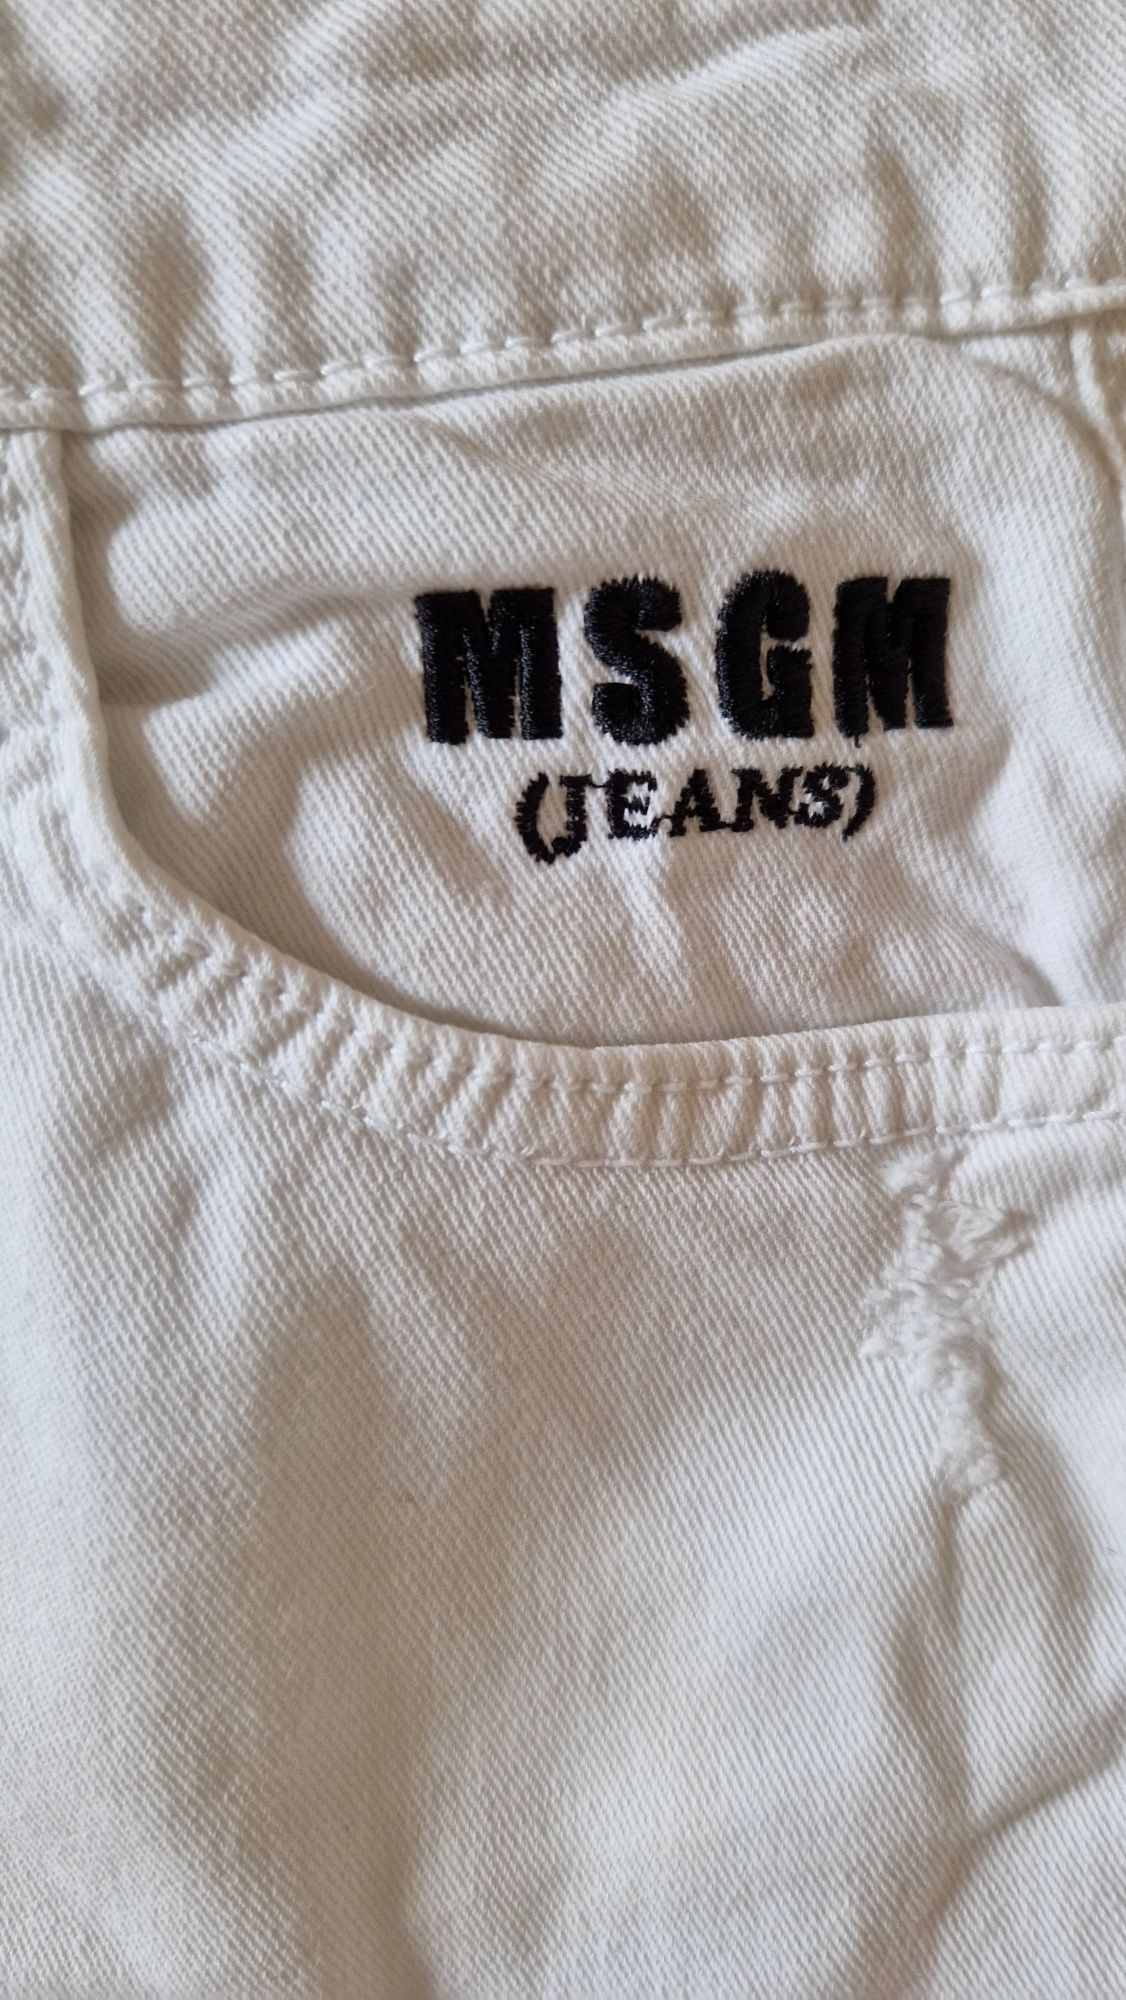 Pantaloni scurti MSGM, marime 8 ani